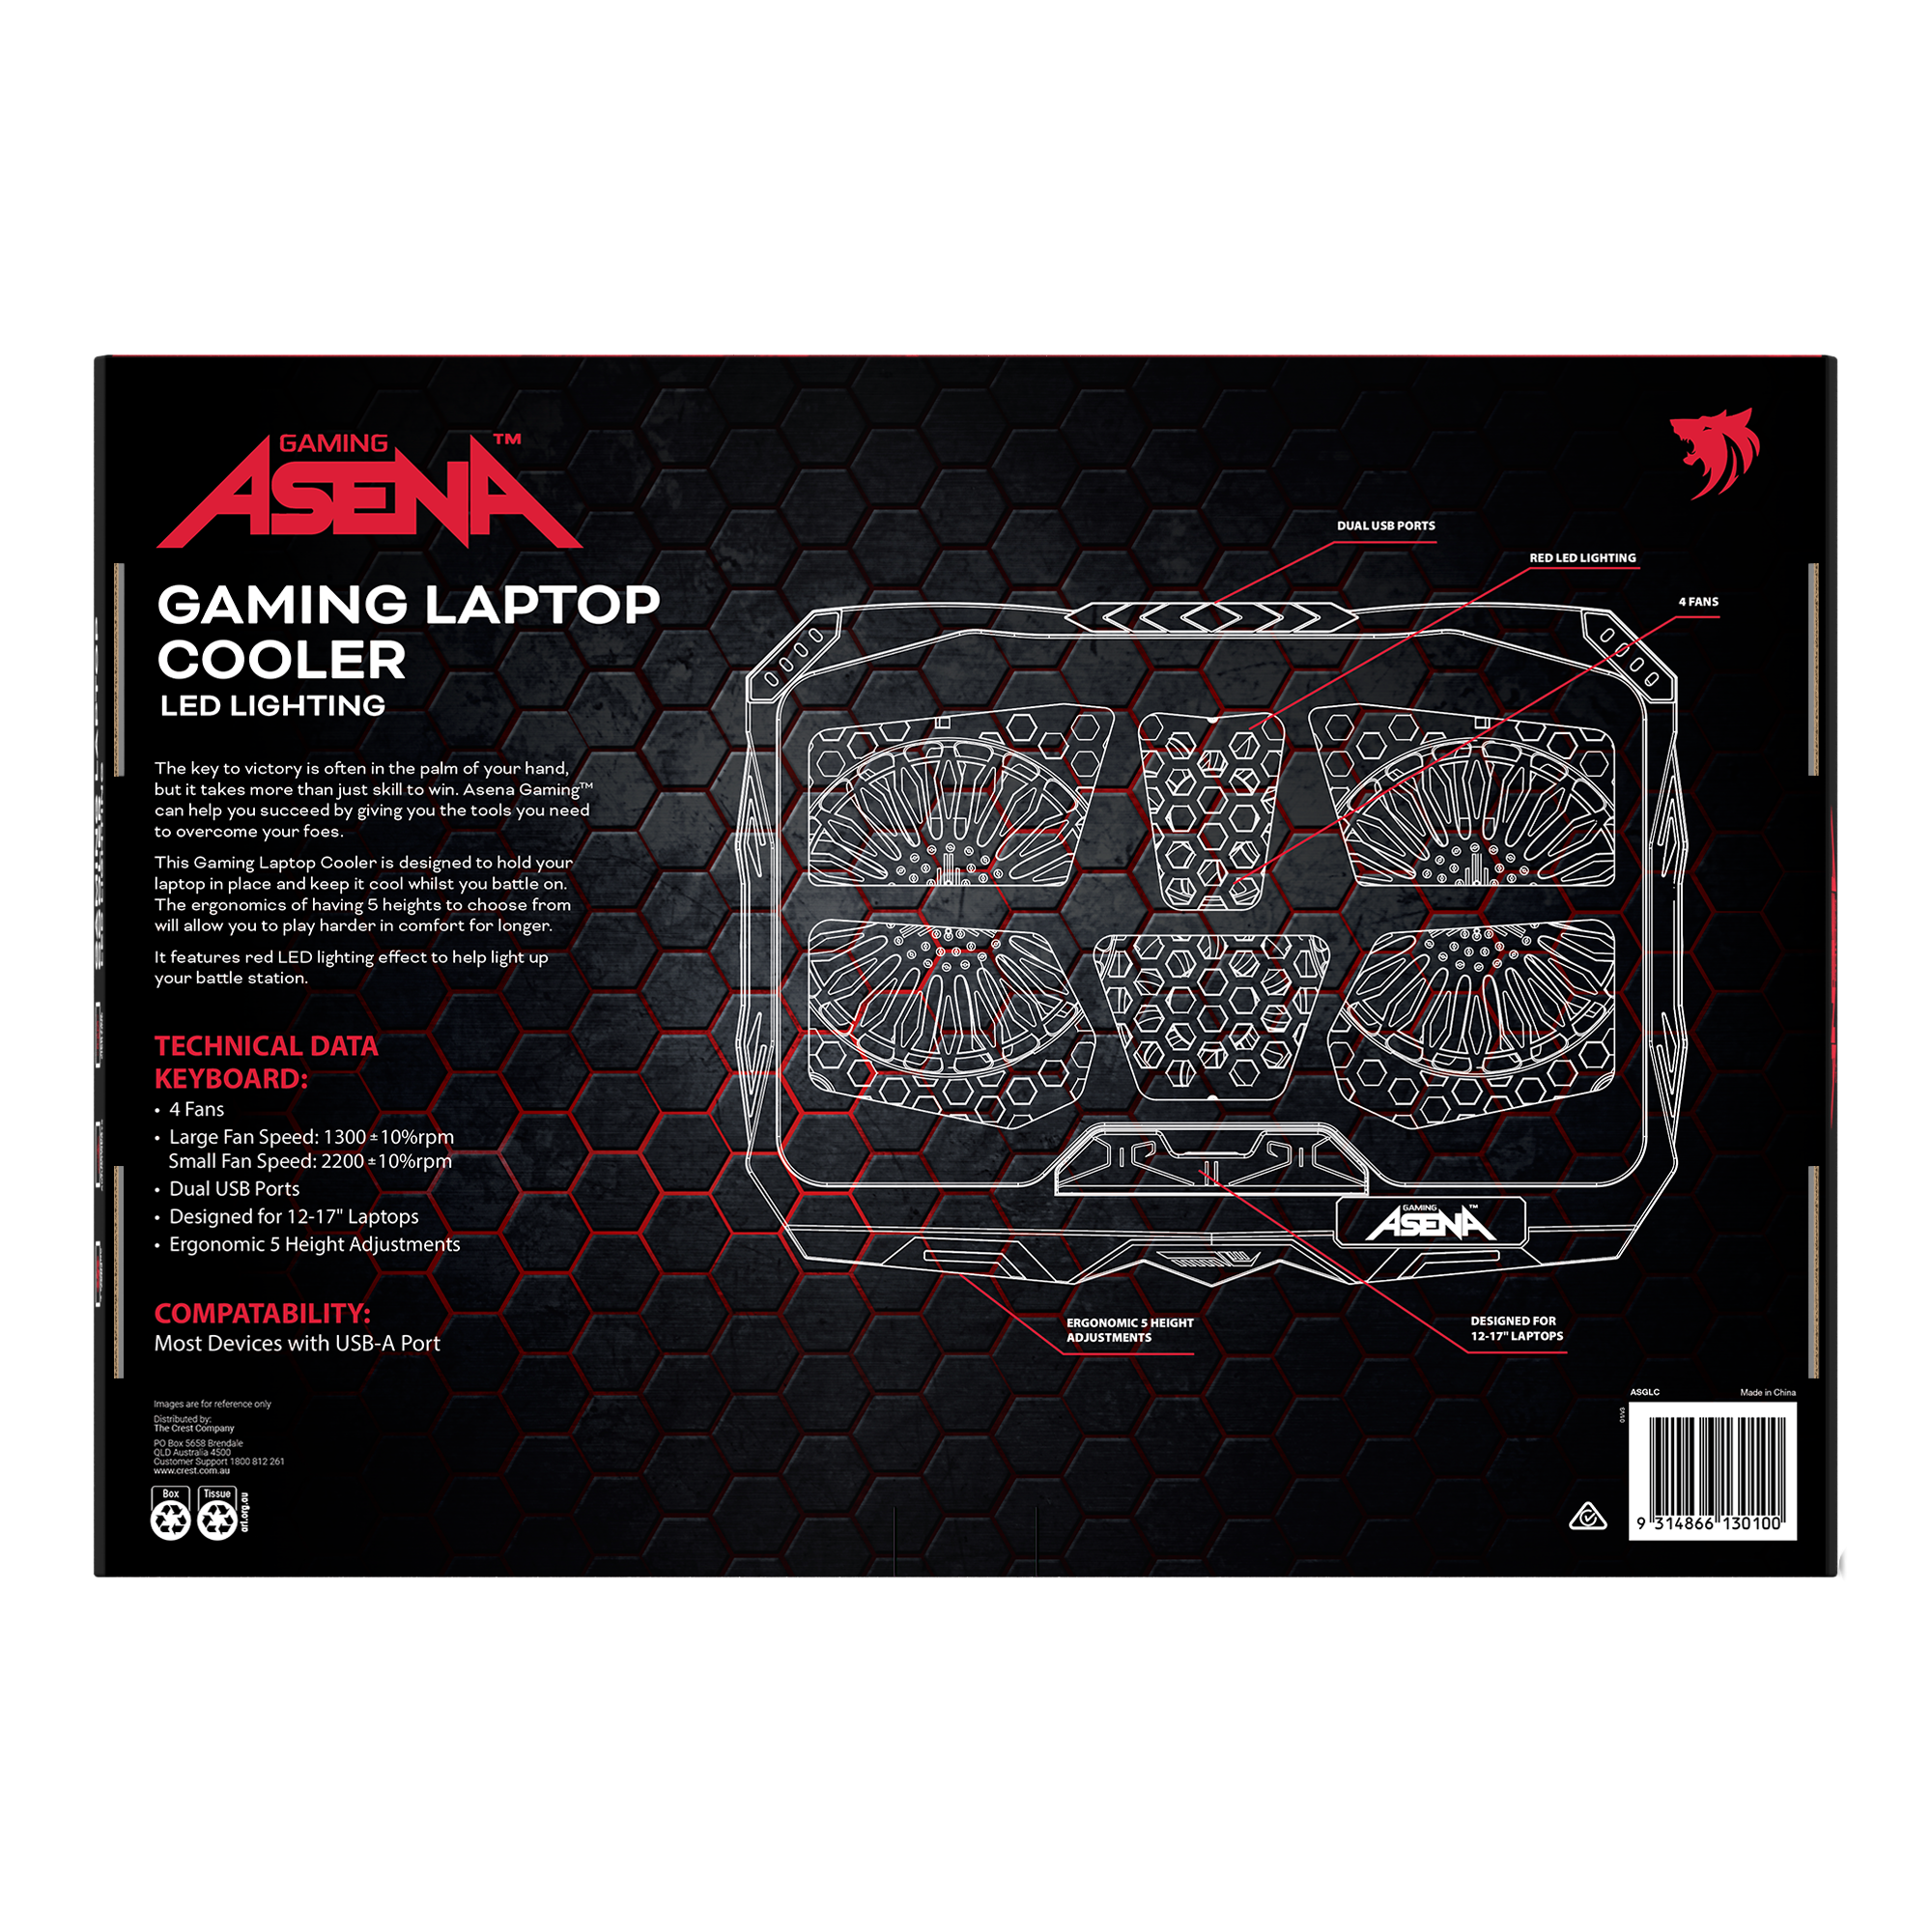 Asena Gaming Laptop Cooler